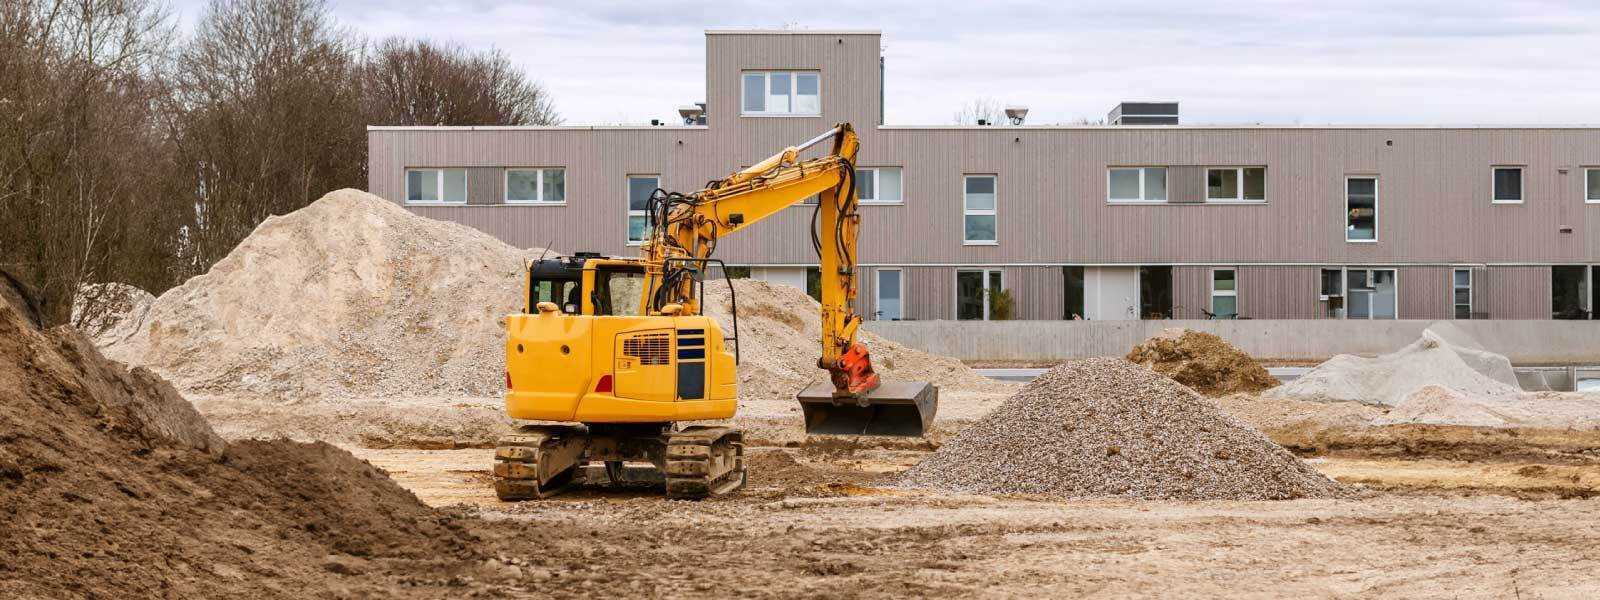 Renting de maquinaria amarilla: clave para empresas de la construcción